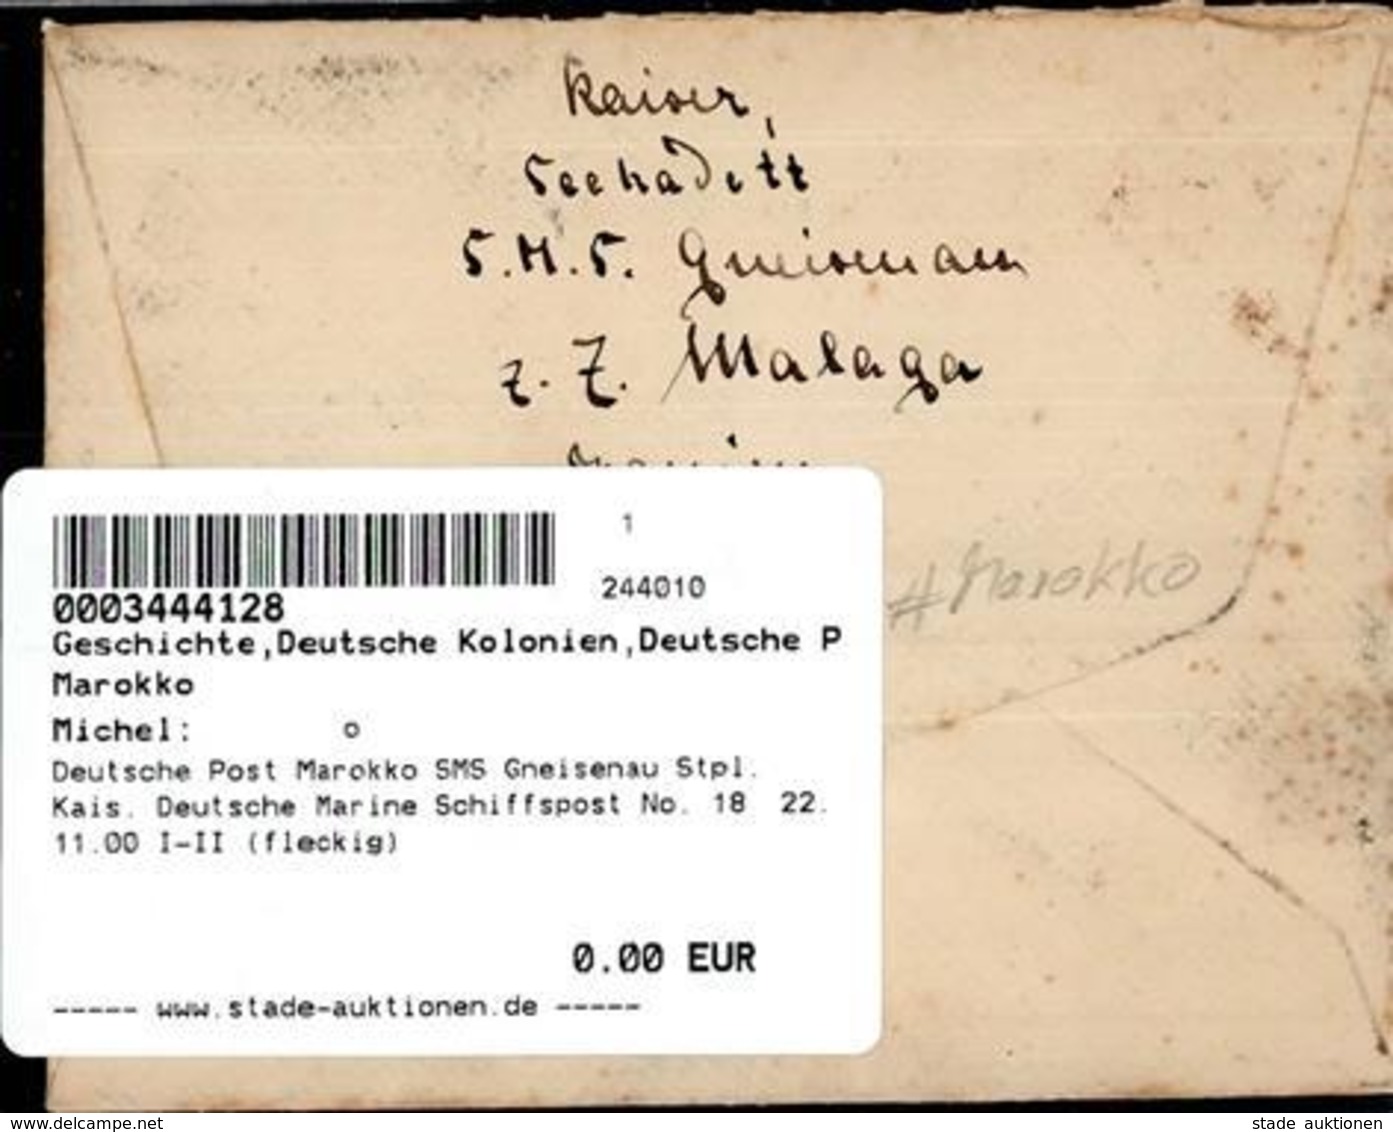 Deutsche Post Marokko SMS Gneisenau Stpl. Kais. Deutsche Marine Schiffspost No. 18  22.11.00 I-II (fleckig) - Afrika